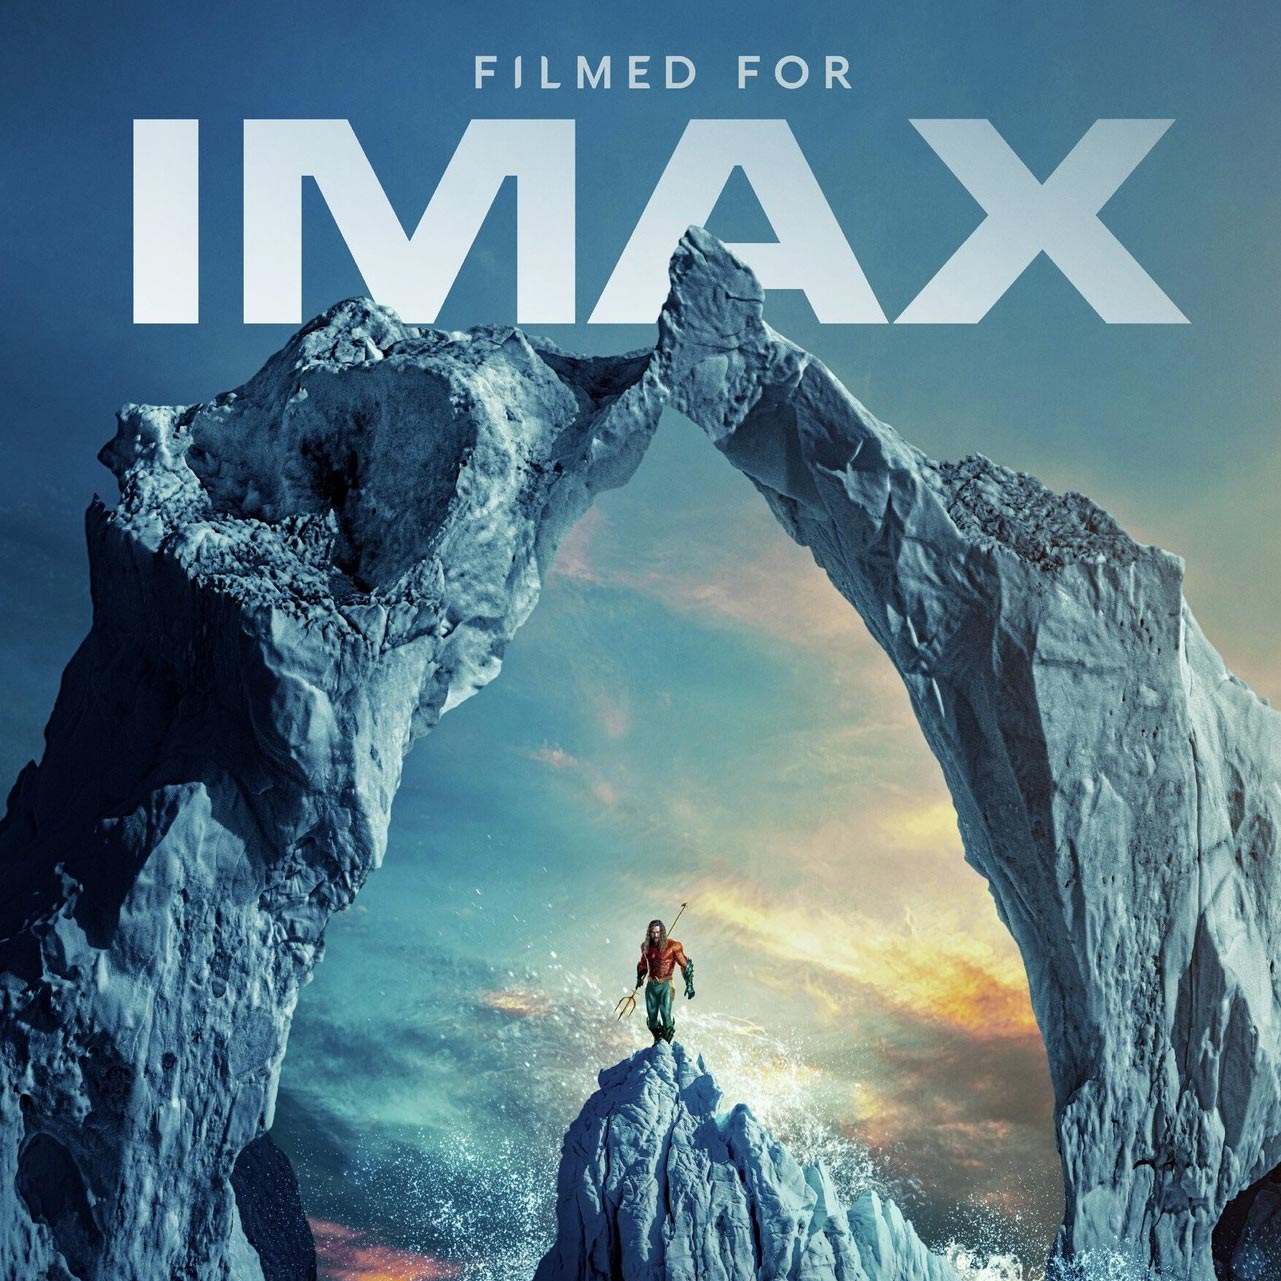        IMAX